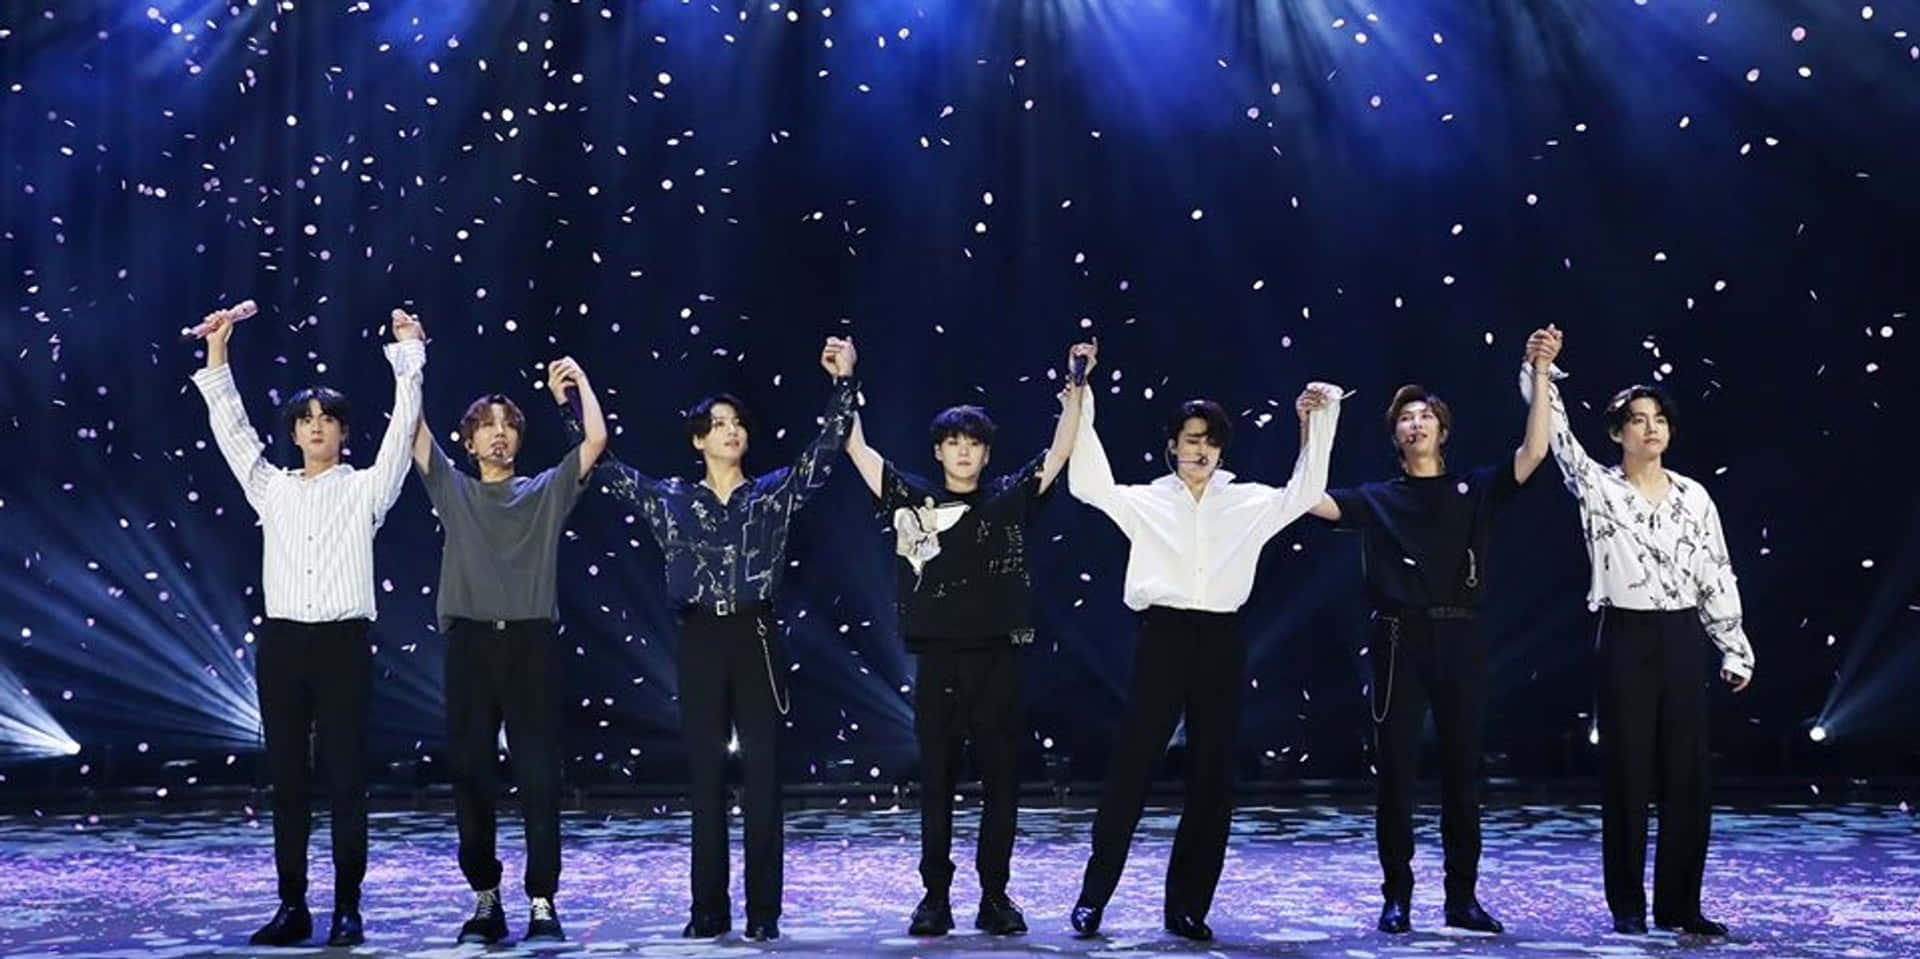 Bts 's 'shine' - Koreansk Idolgrupp Inom Kpop